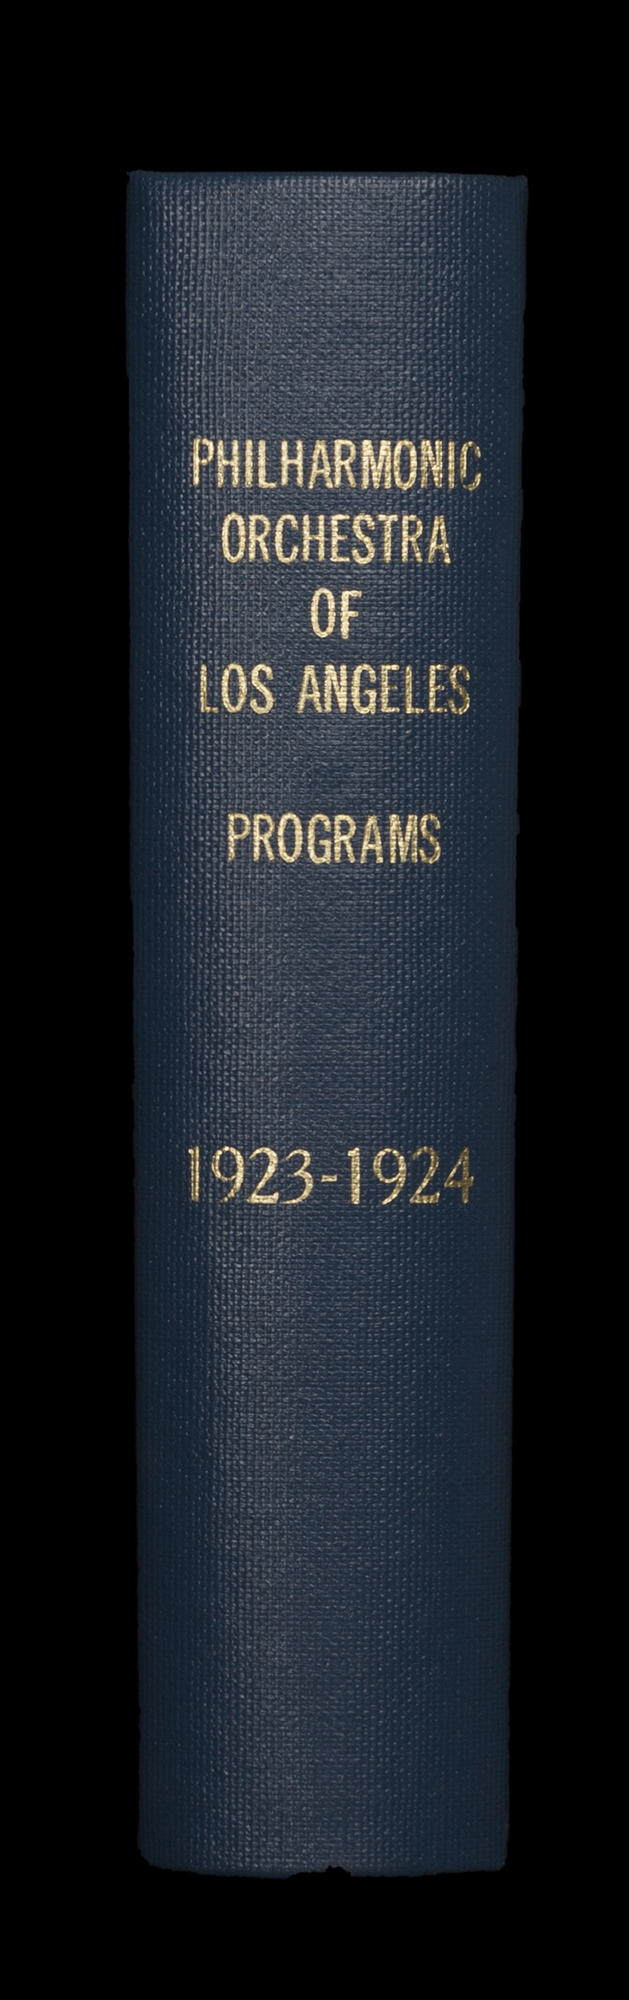 LAPO_ProgramBook_Spine_1923-1924.jpg